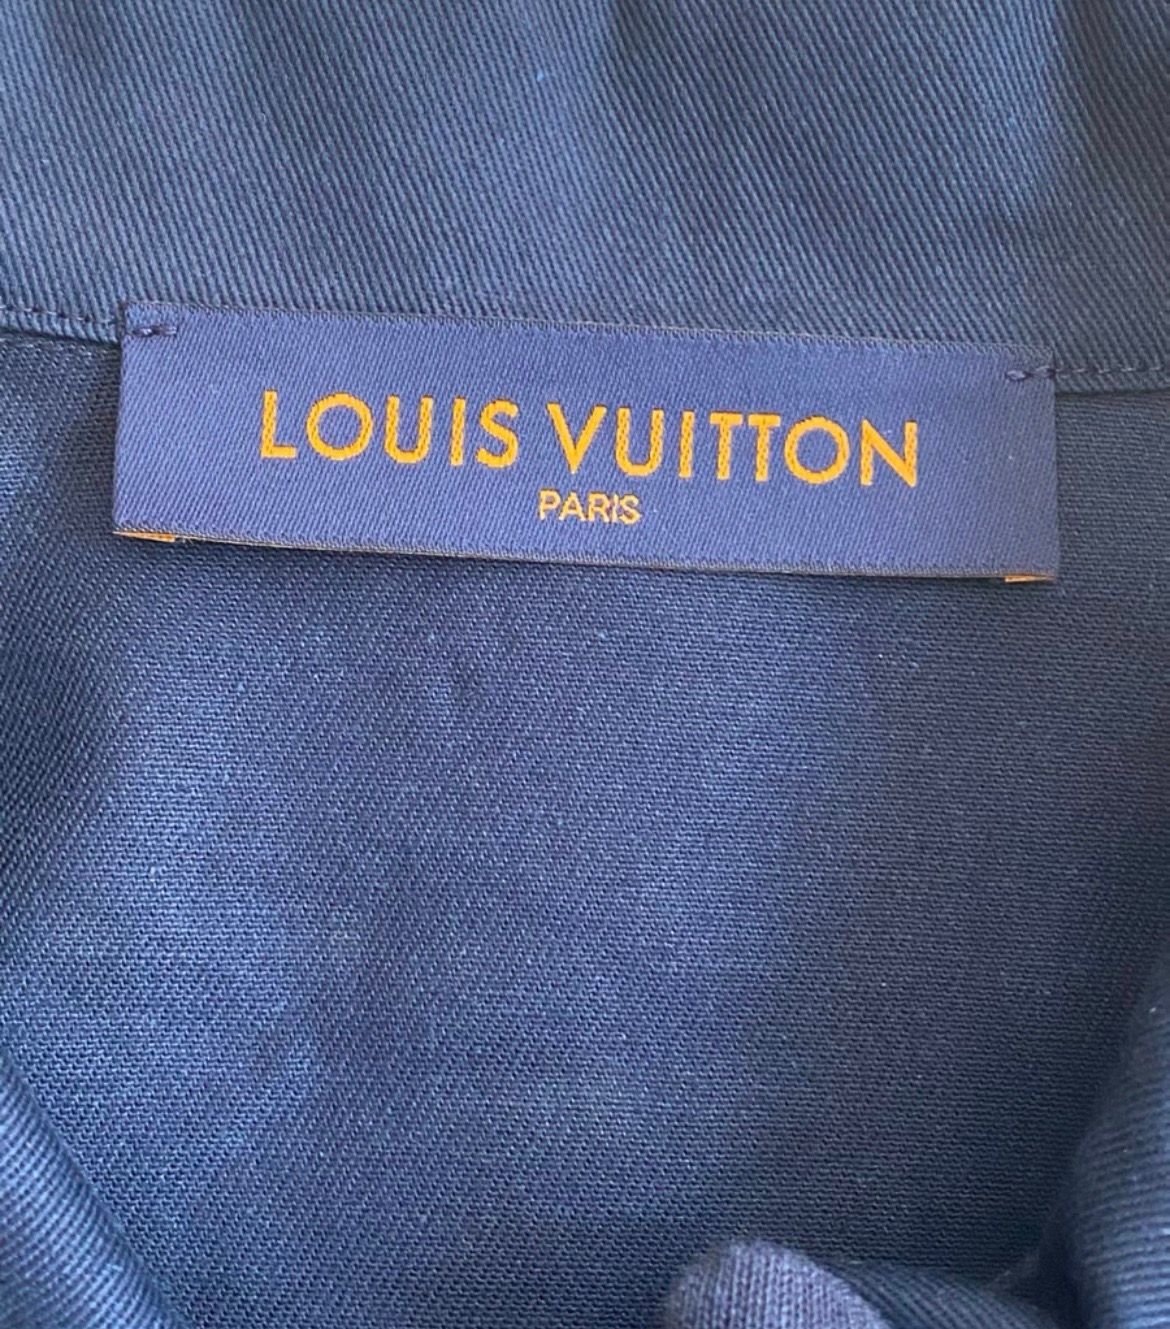 Louis Vuitton SS19 Hawaiian Dice Silk Shirt